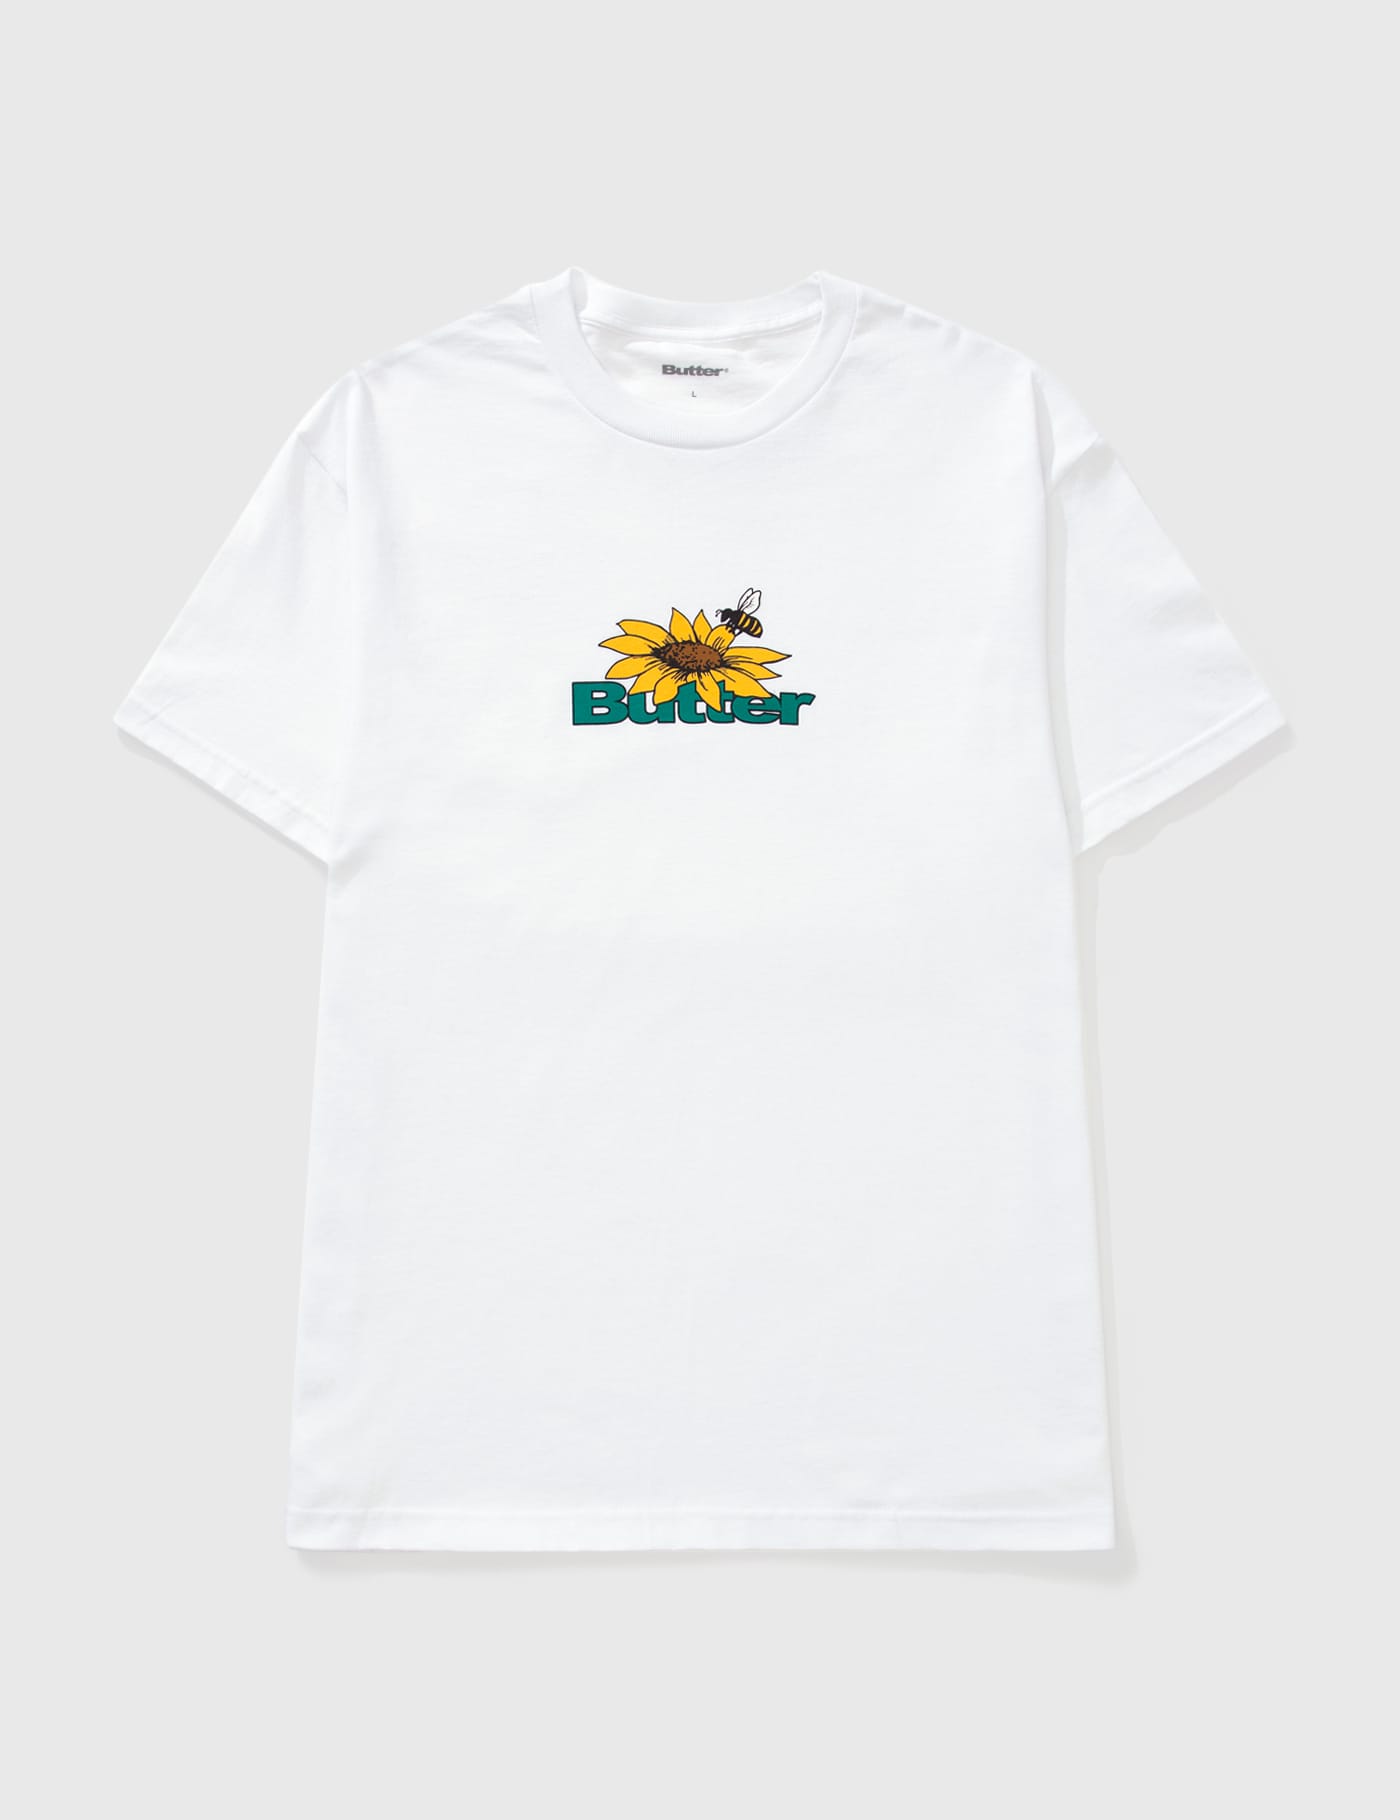 Butter Goods - Sunflower Logo T-shirt | HBX - Globally Curated